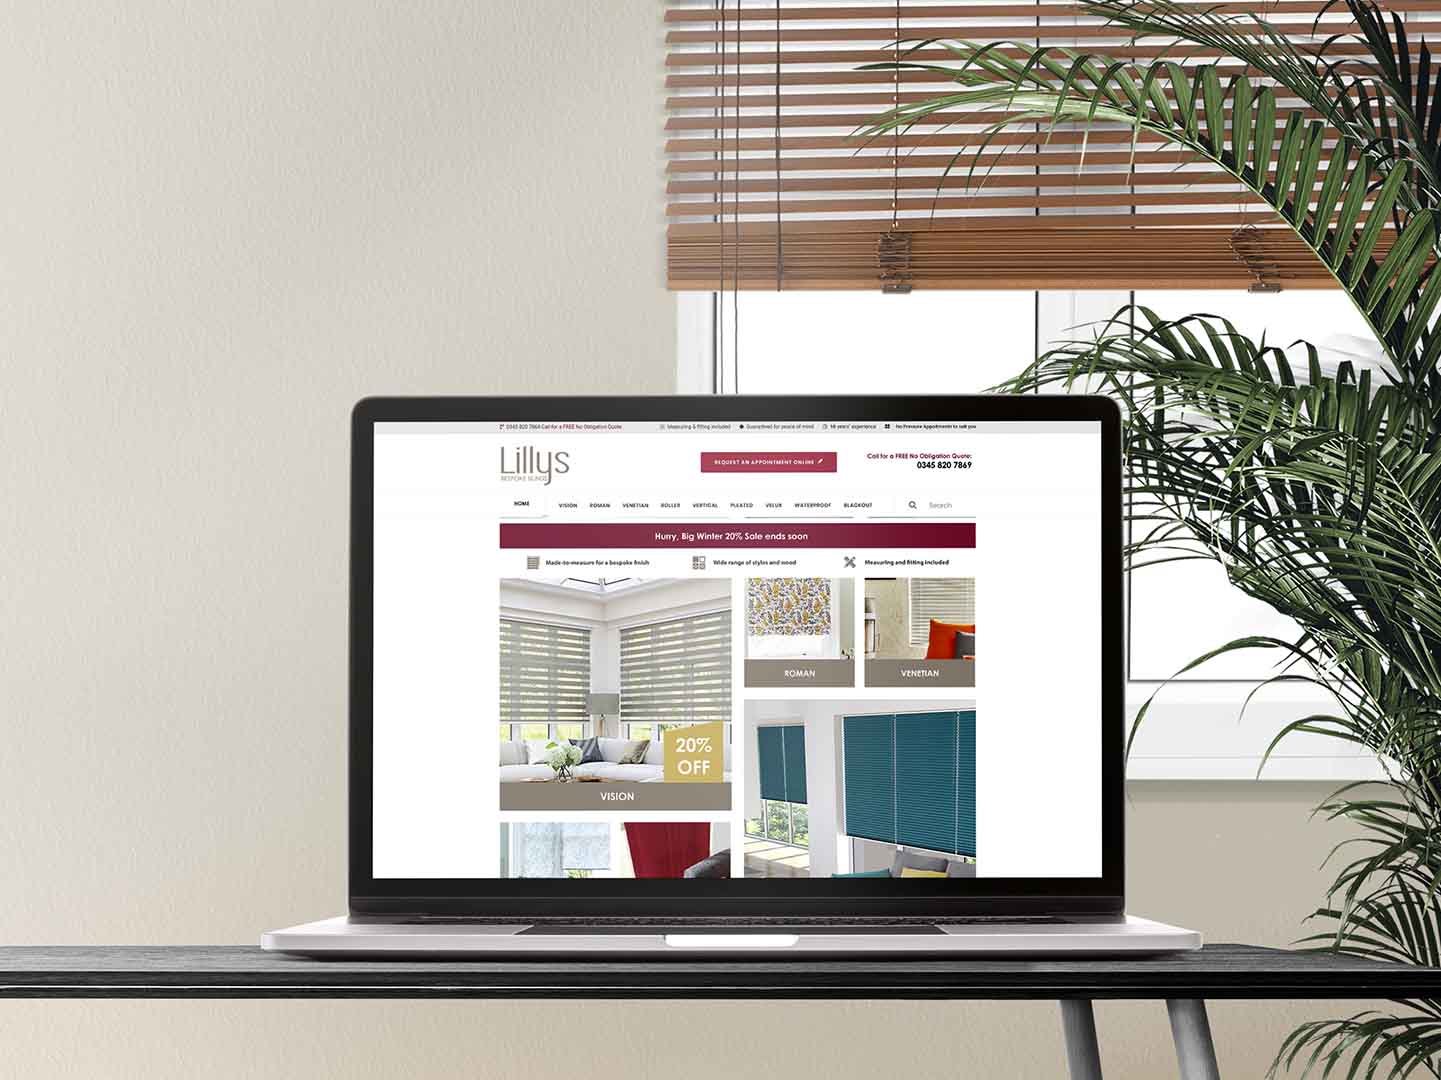 Lillys blinds website design displayed on a laptop